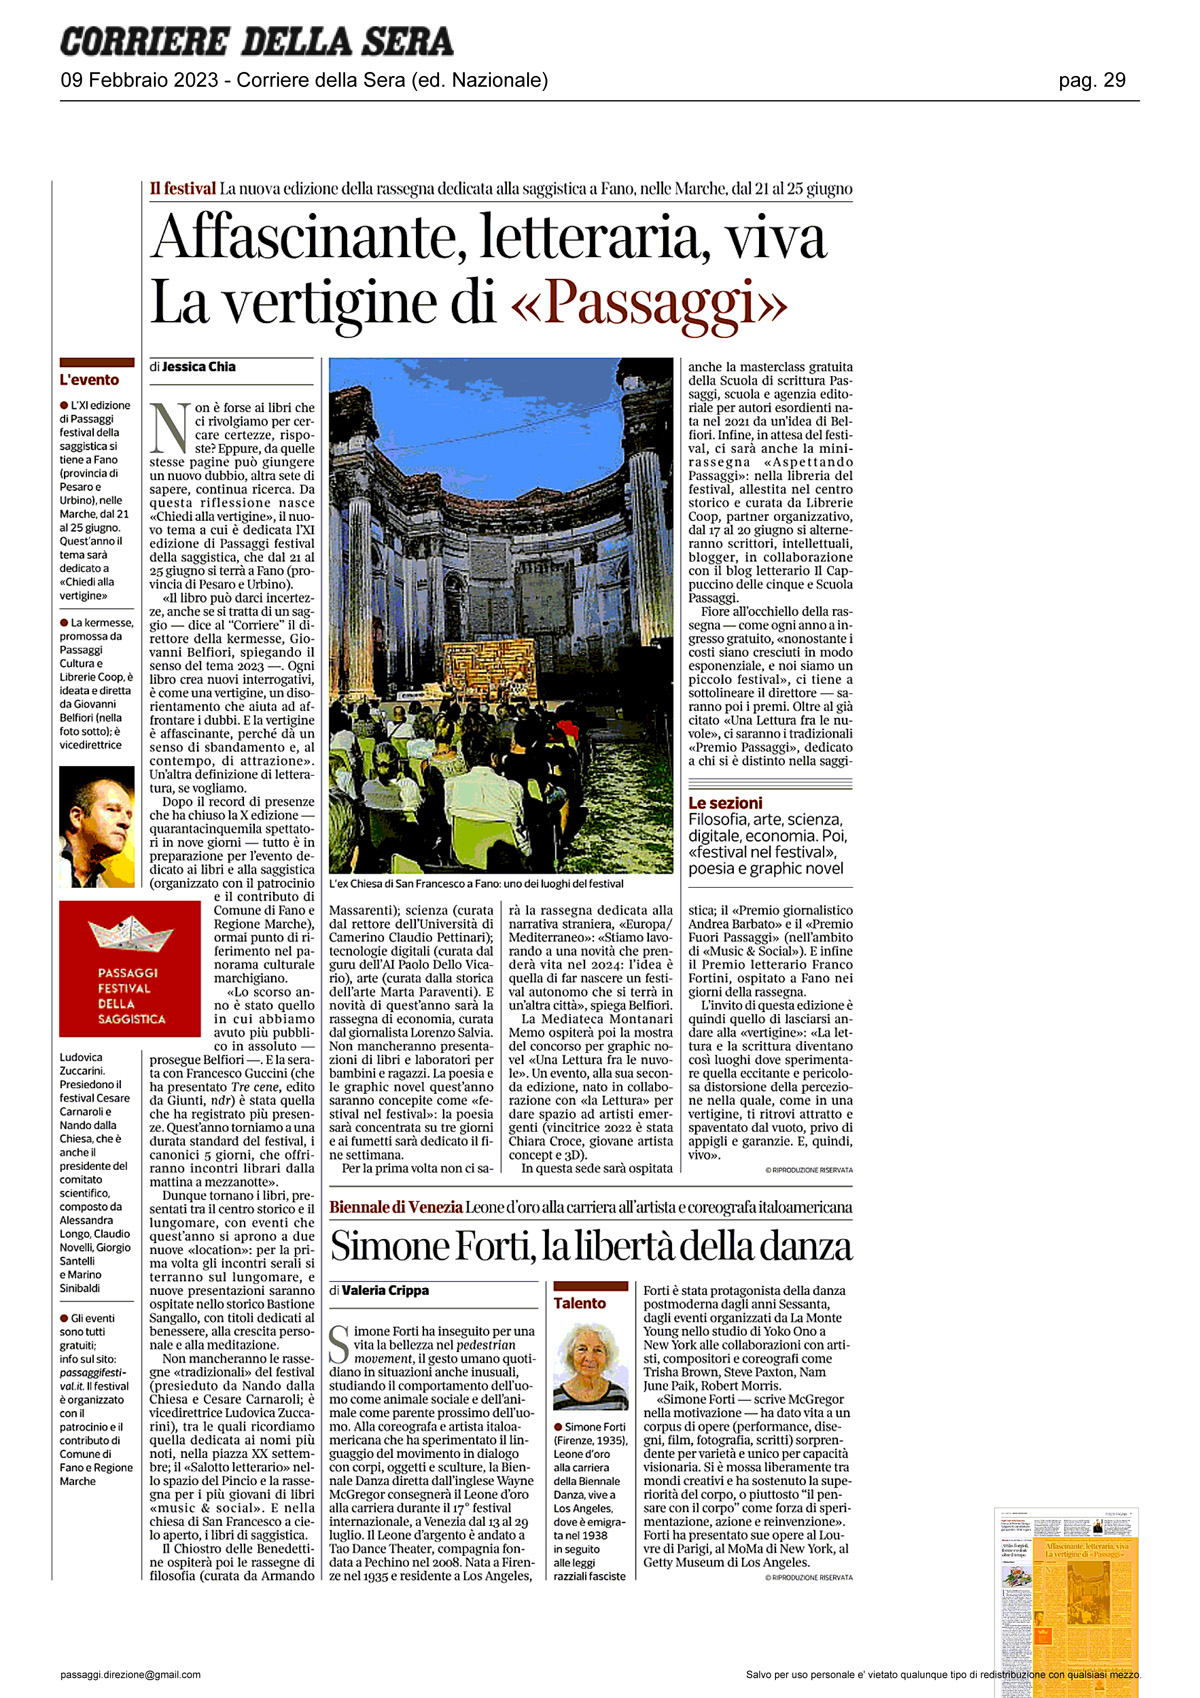 Corriere_della_Sera_affascinante_letteraria_viva_la_vertigine_di_passaggi